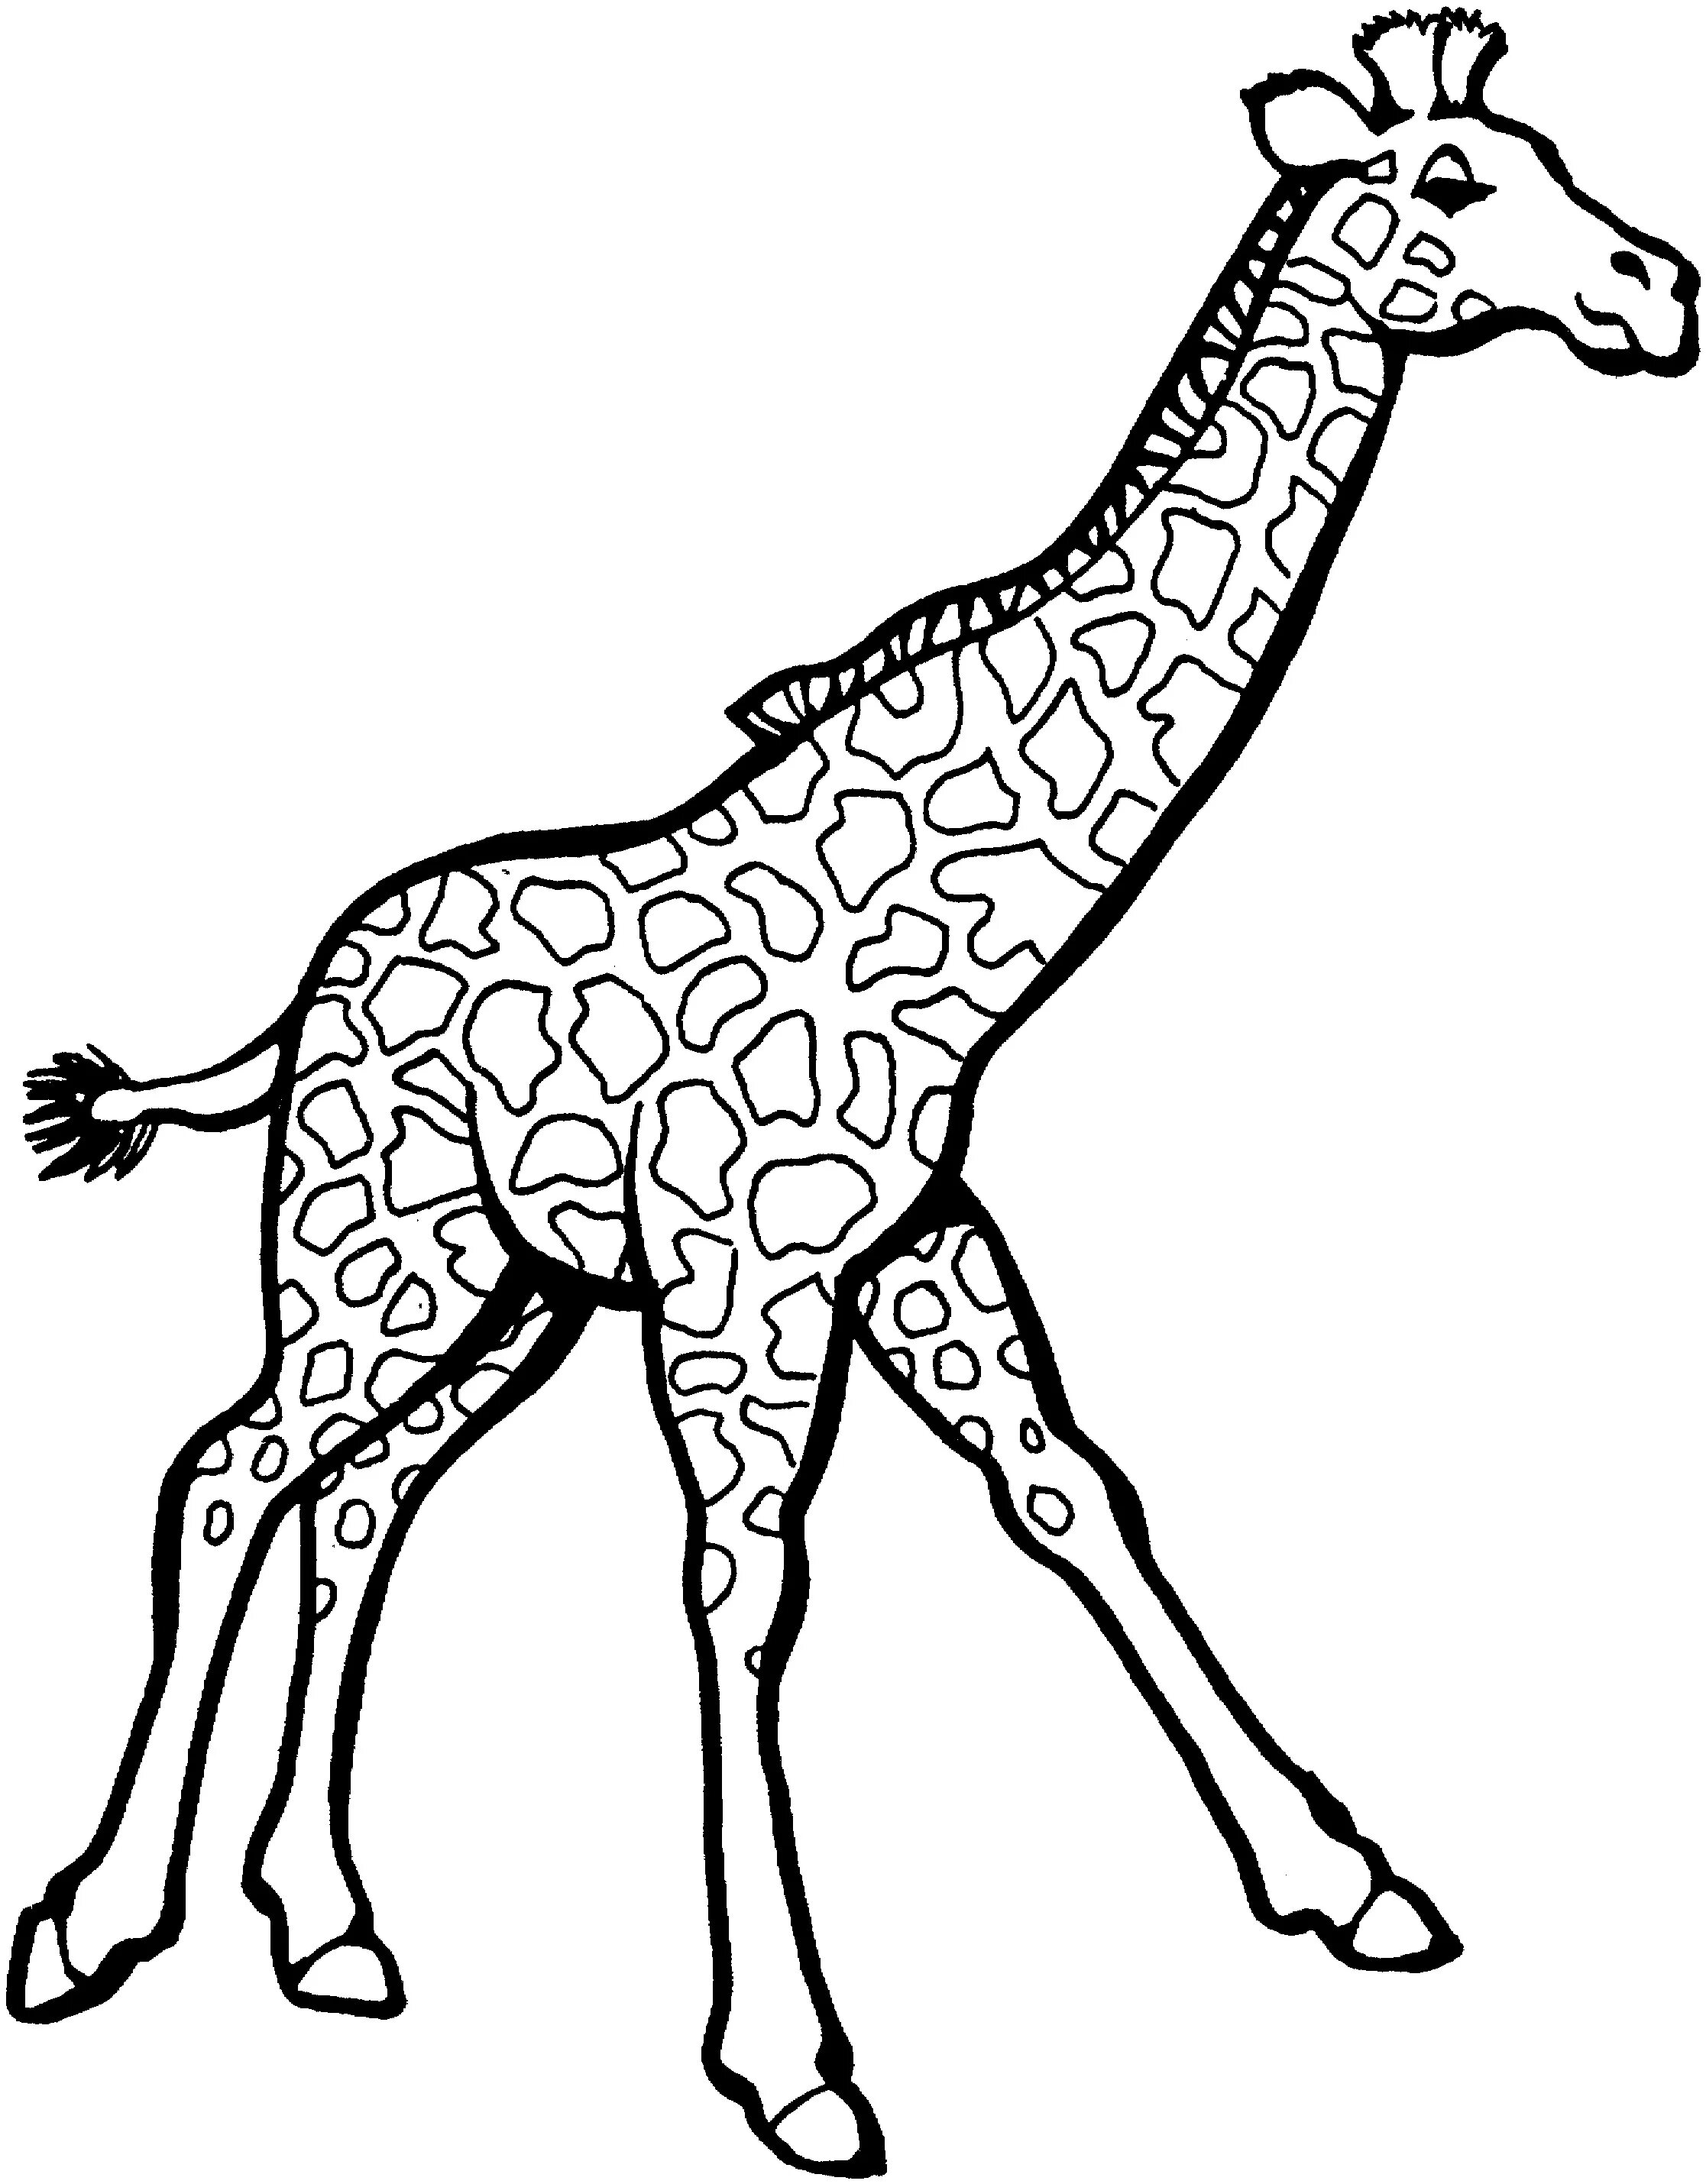 Giraffe for children 6 7 years old #3